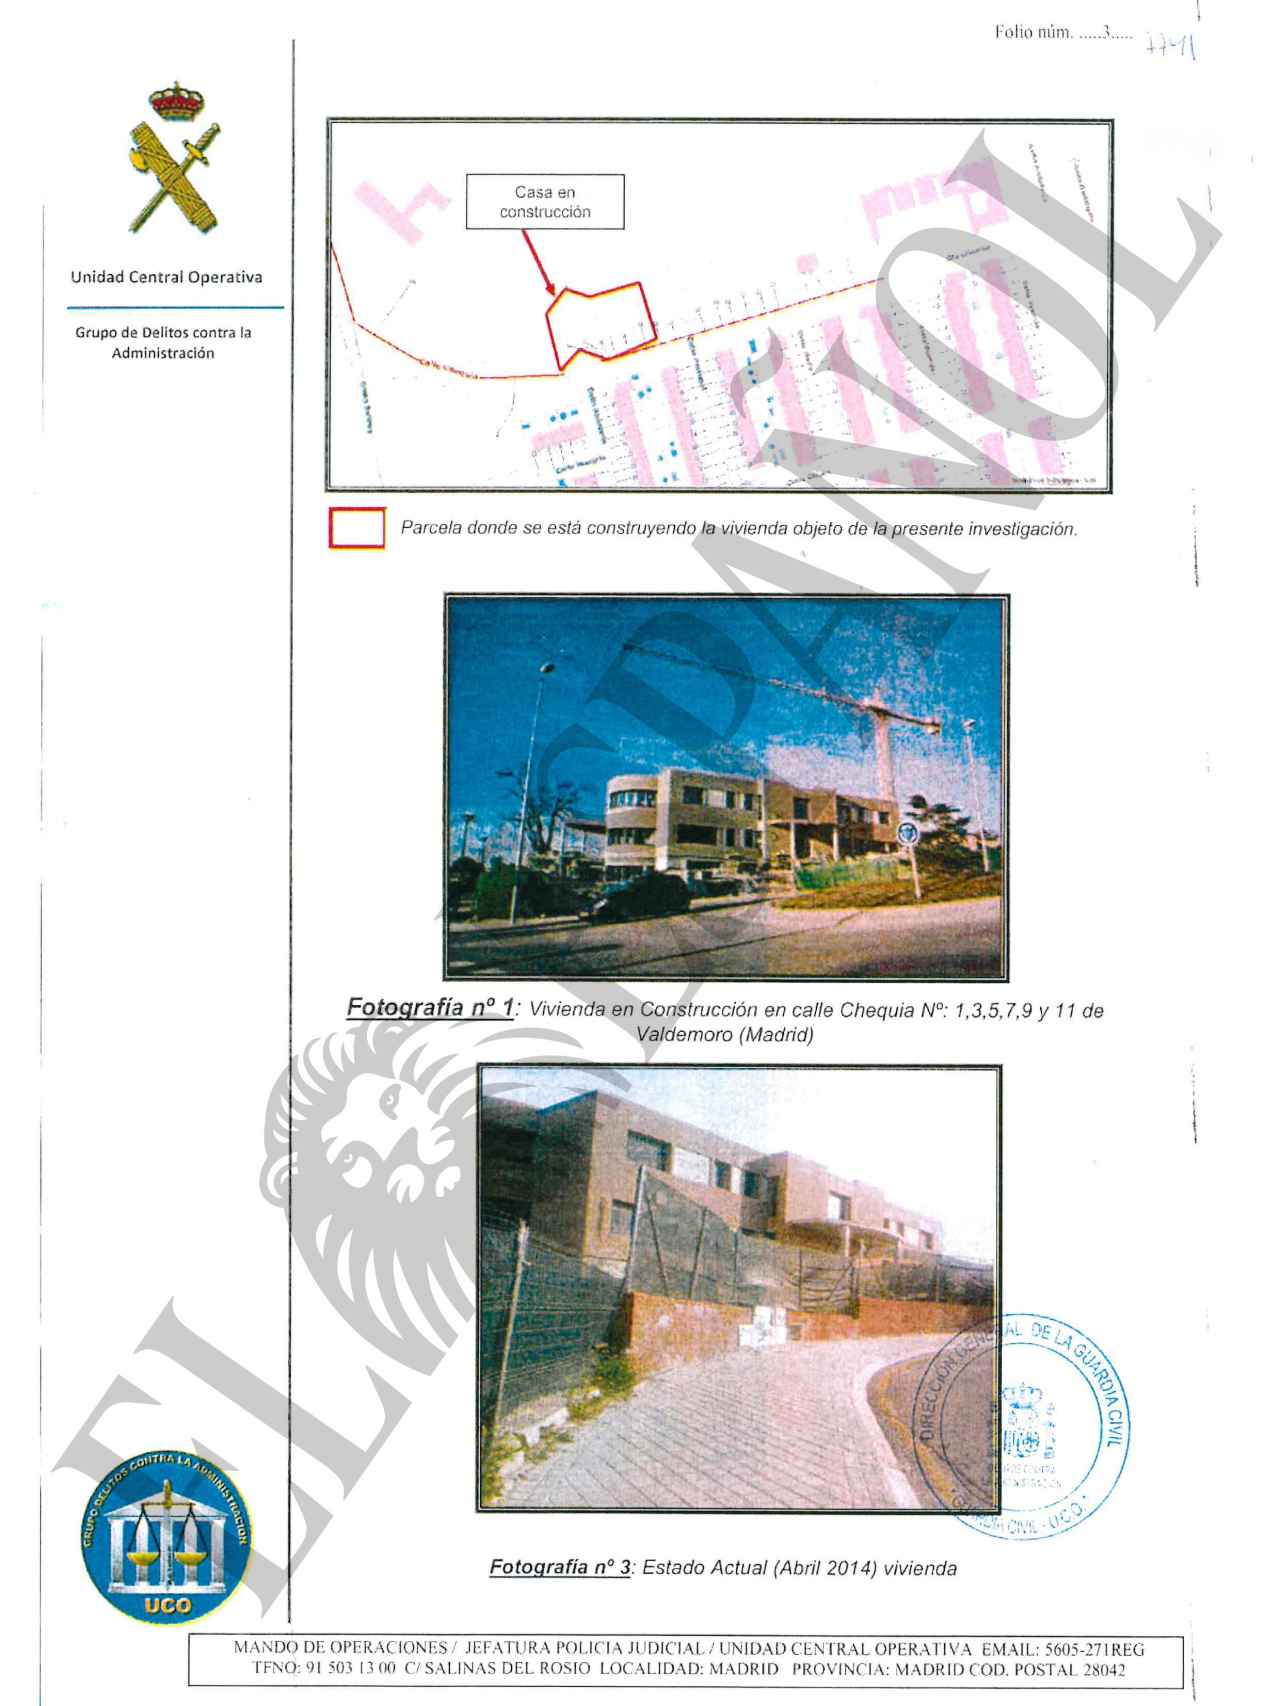 Plano de situación y fotografías de la vivienda en construcción.